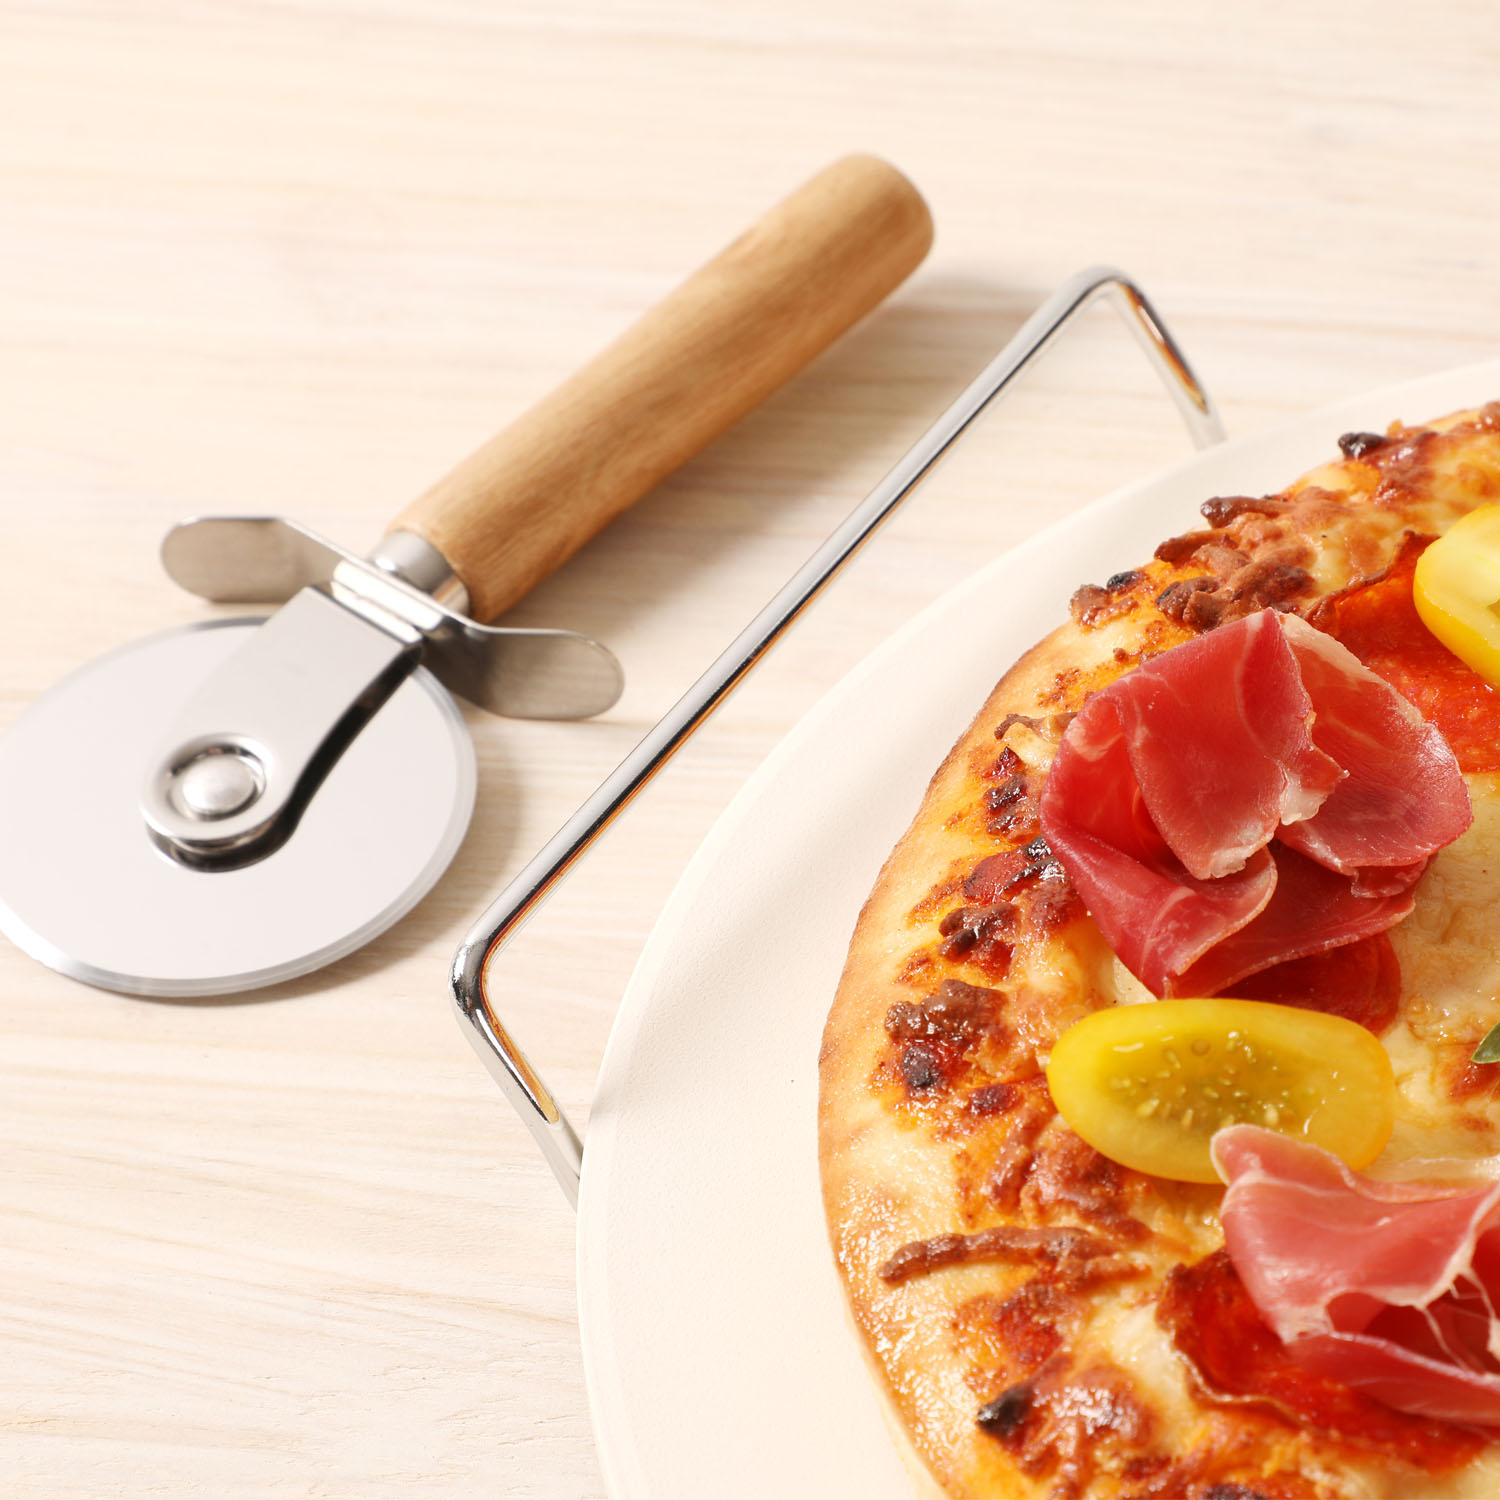 Piedra para Pizza 33 cms con Rejilla para Horno